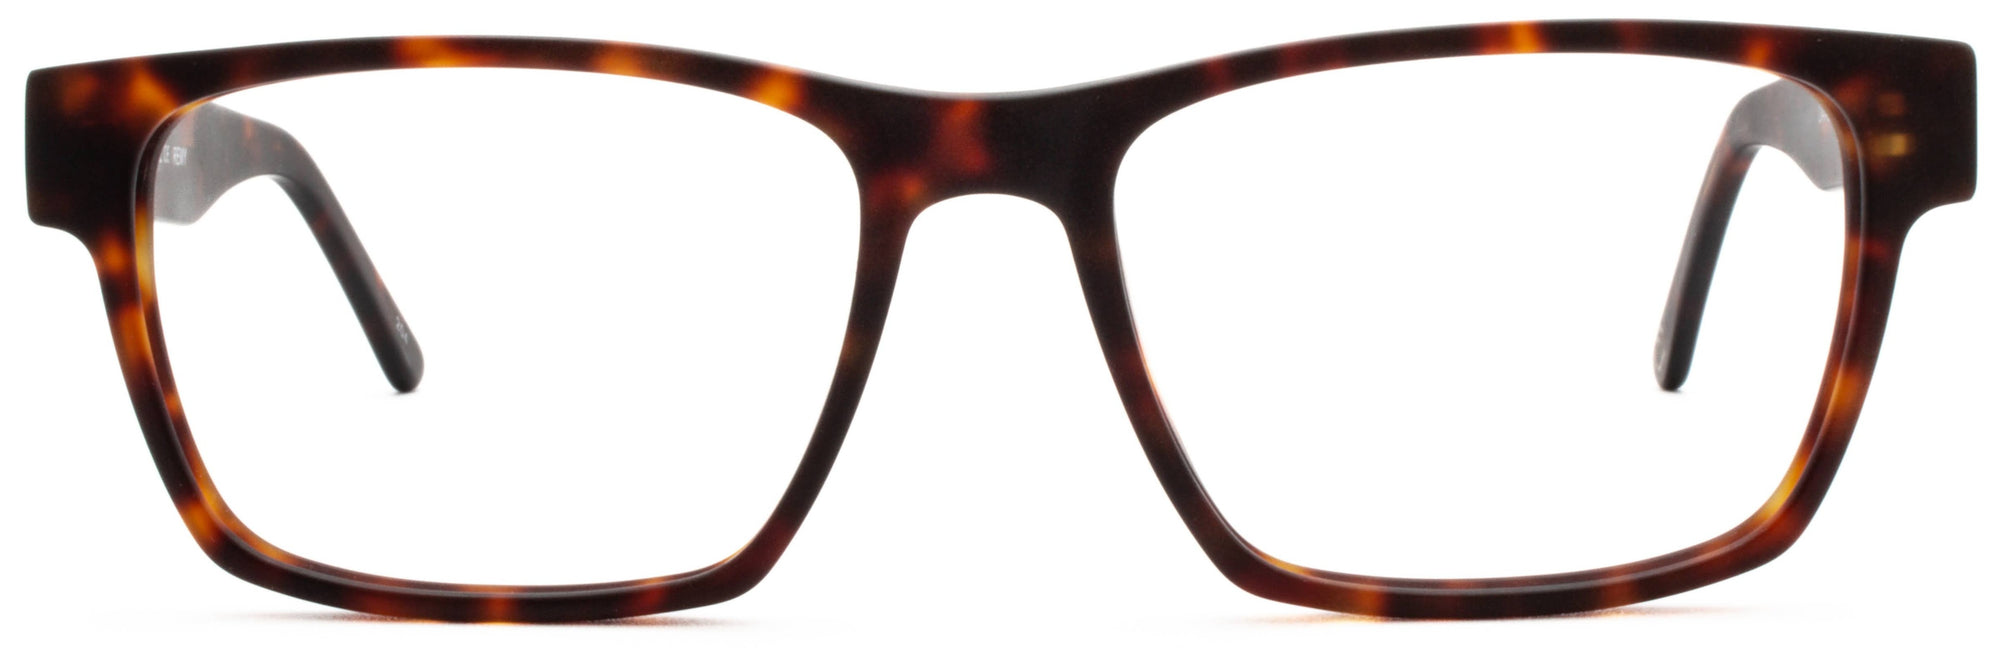 Alexander Daas - Remy Eyeglasses - Tortoise - Front View